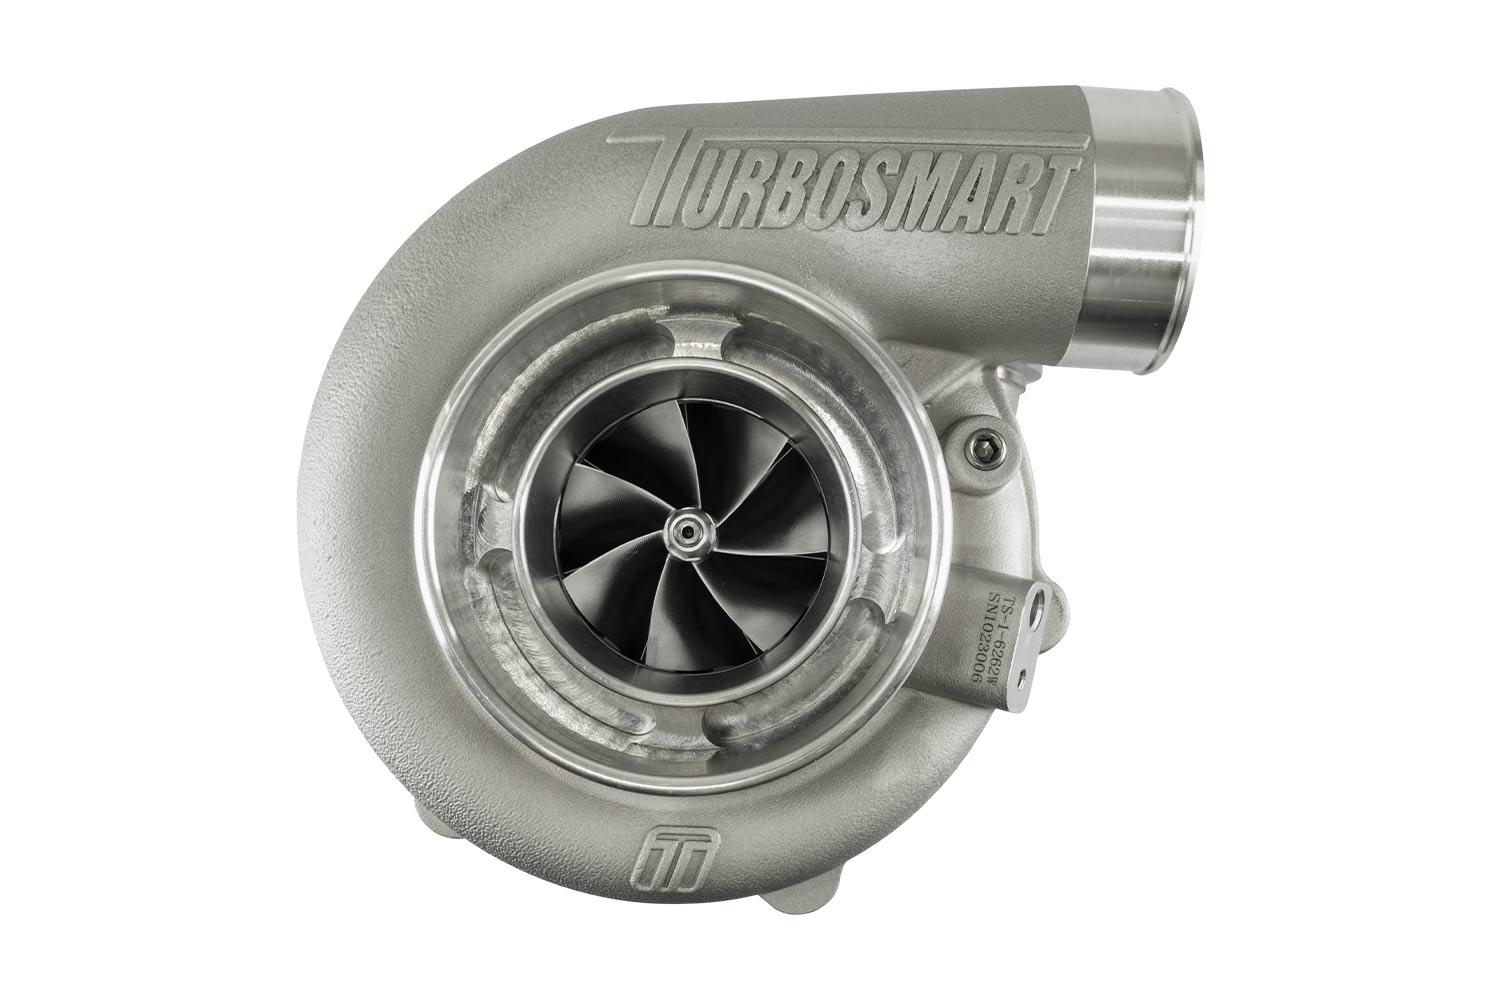 Turbosmart TURBO Water Cooled 6466 V-Band Inlet, V-Band Outlet, A/R 0.82 External Wastegate